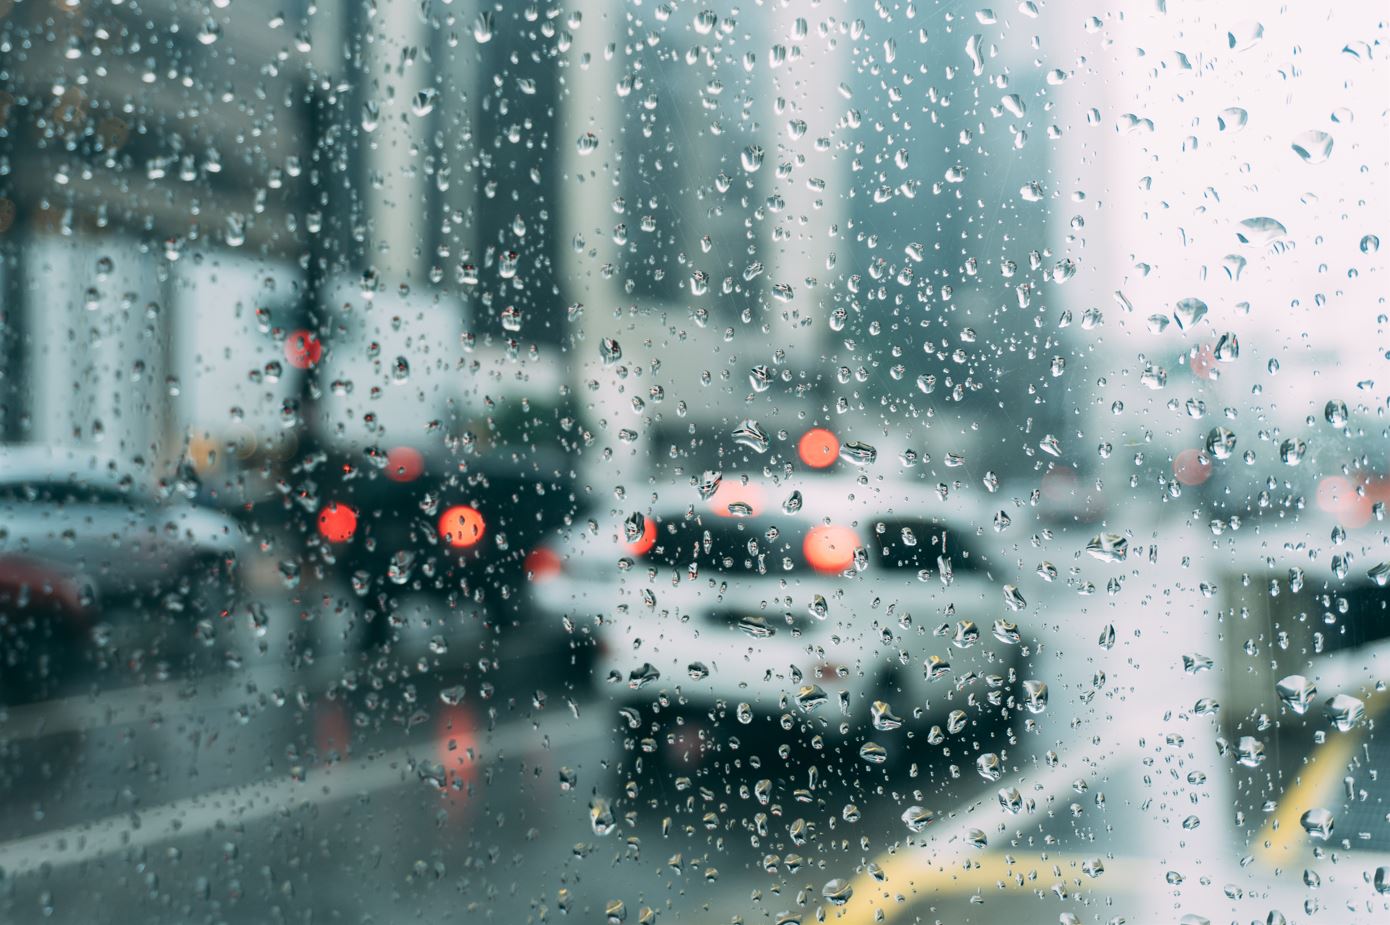 O καιρός με τον Π. Γιαννόπουλο: Την Κυριακή φθινόπωρο με έντονες βροχές και καταιγίδες (video)